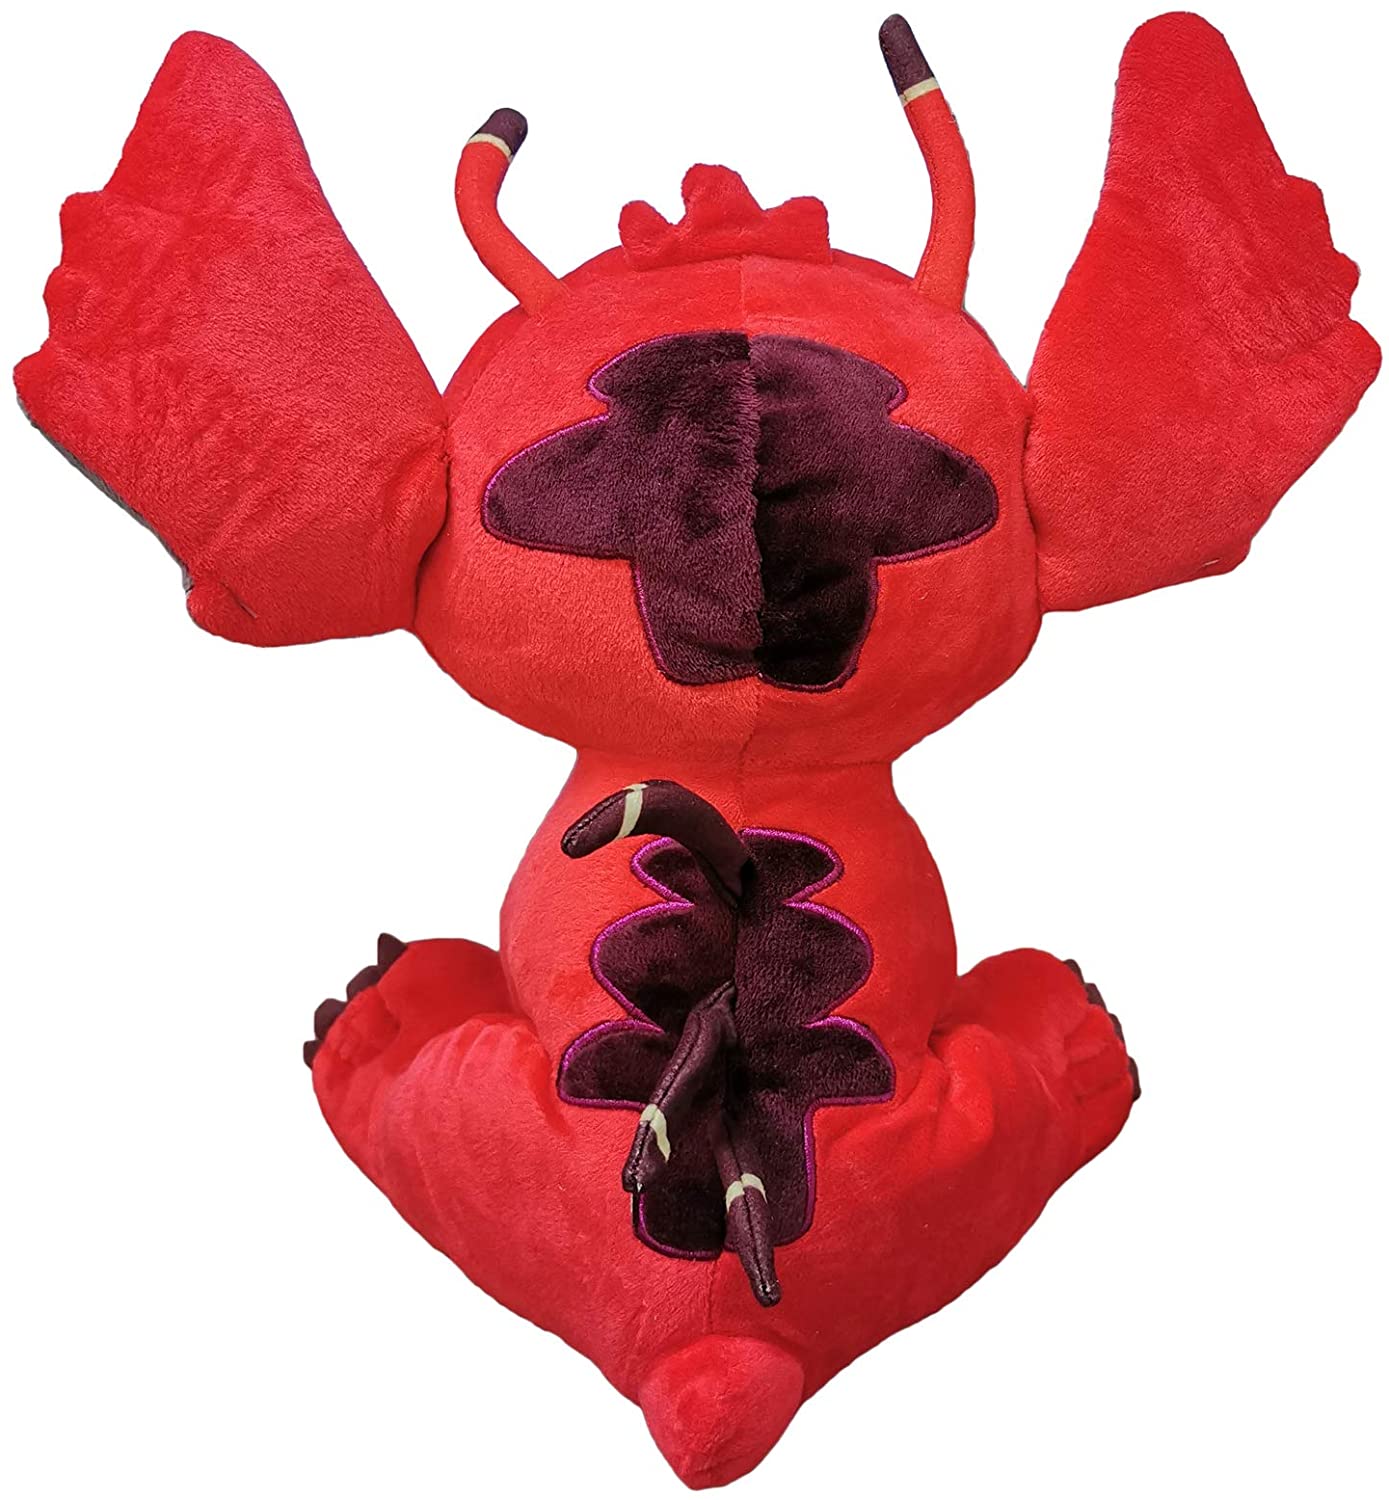 Plush Leroy STITCH Lilo & Stitch red with sound 11'41"/ 29cm Quality super 